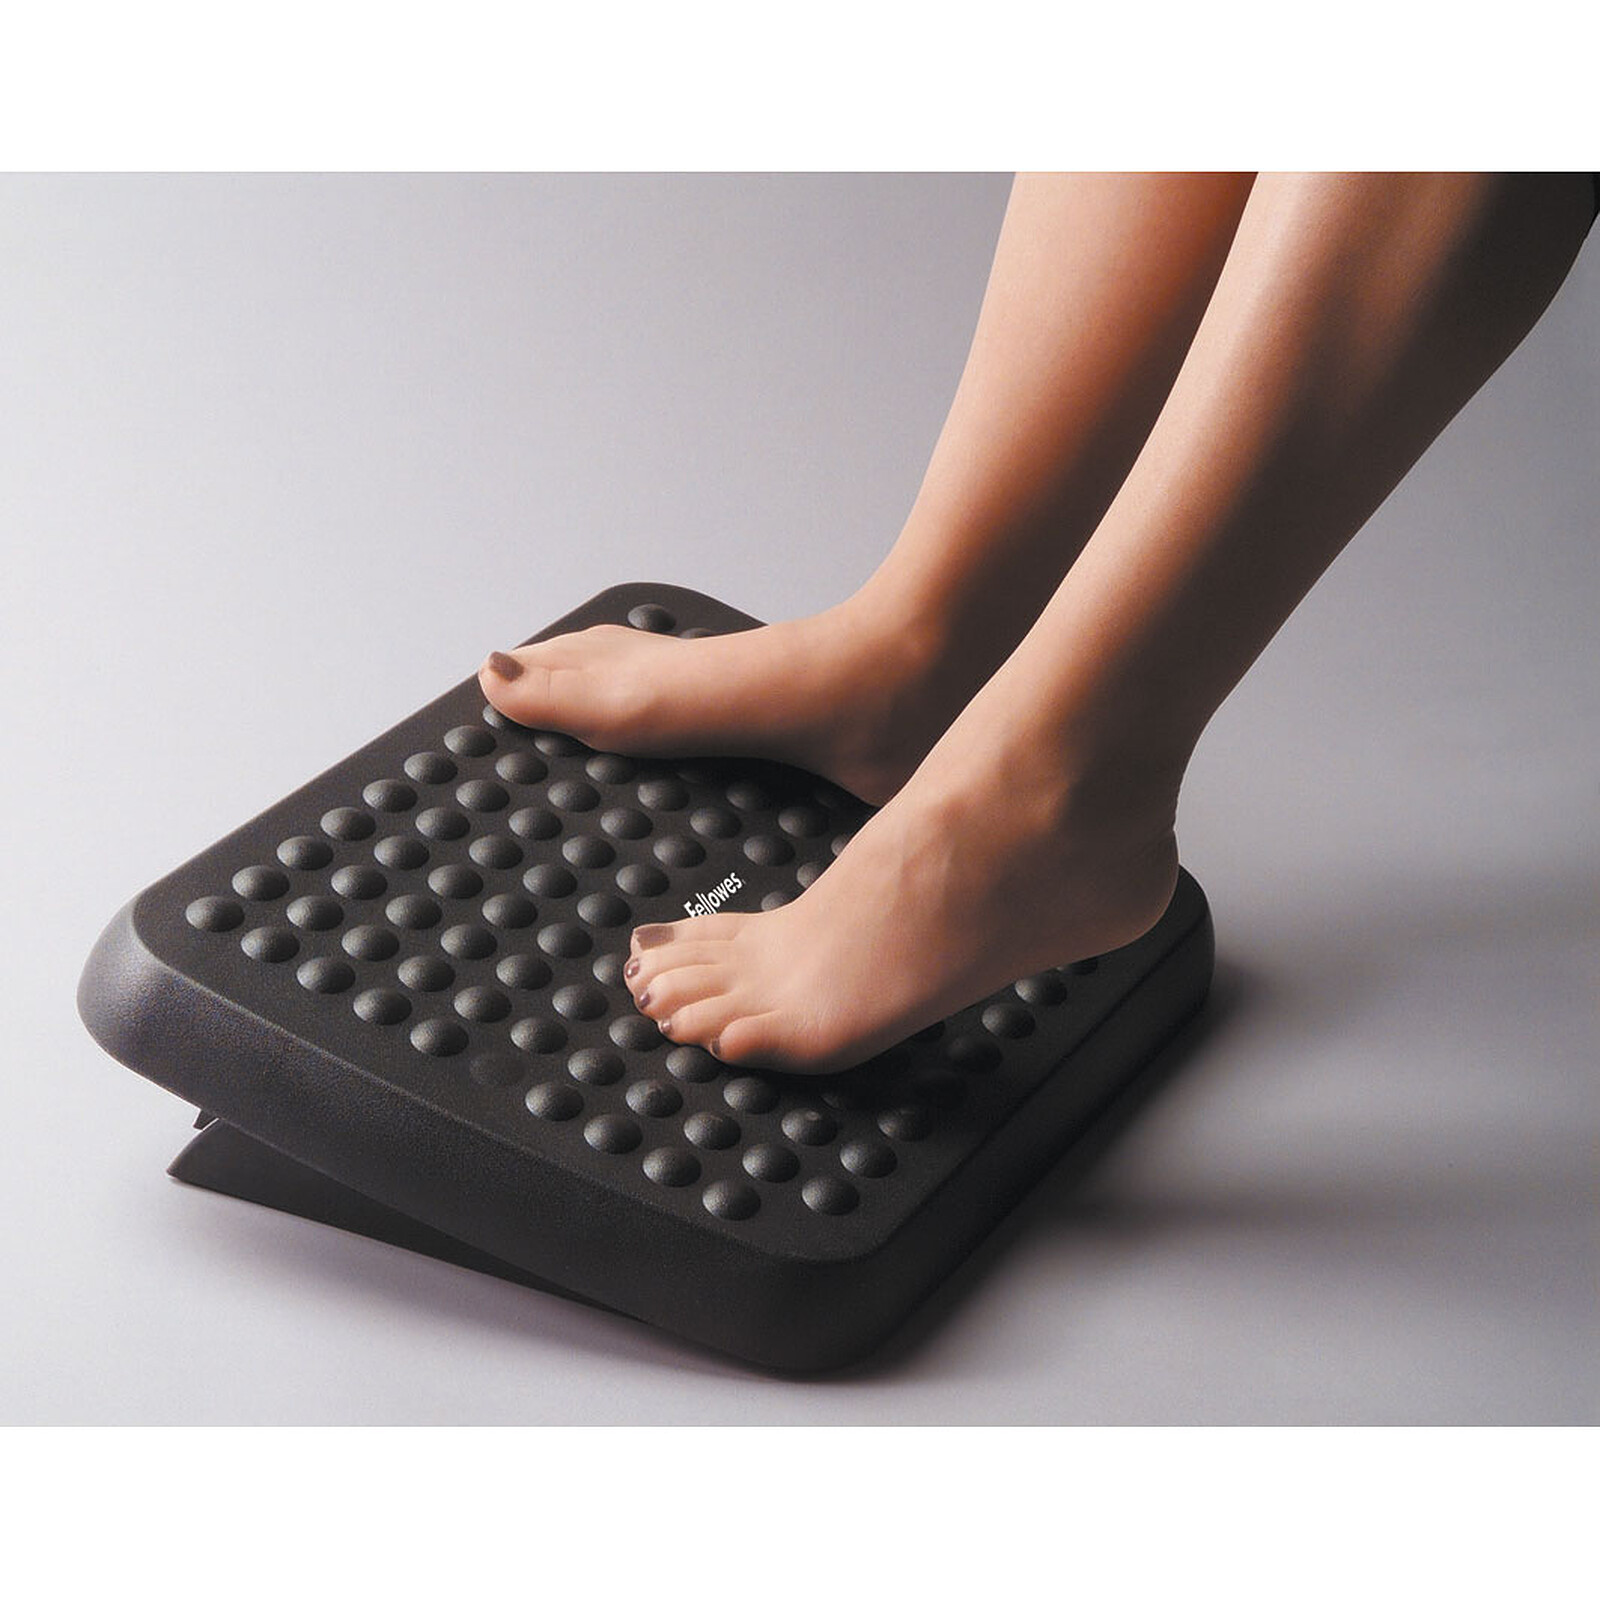 Fellowes Repose-pieds réglable Standard - Accessoires et ergonomie